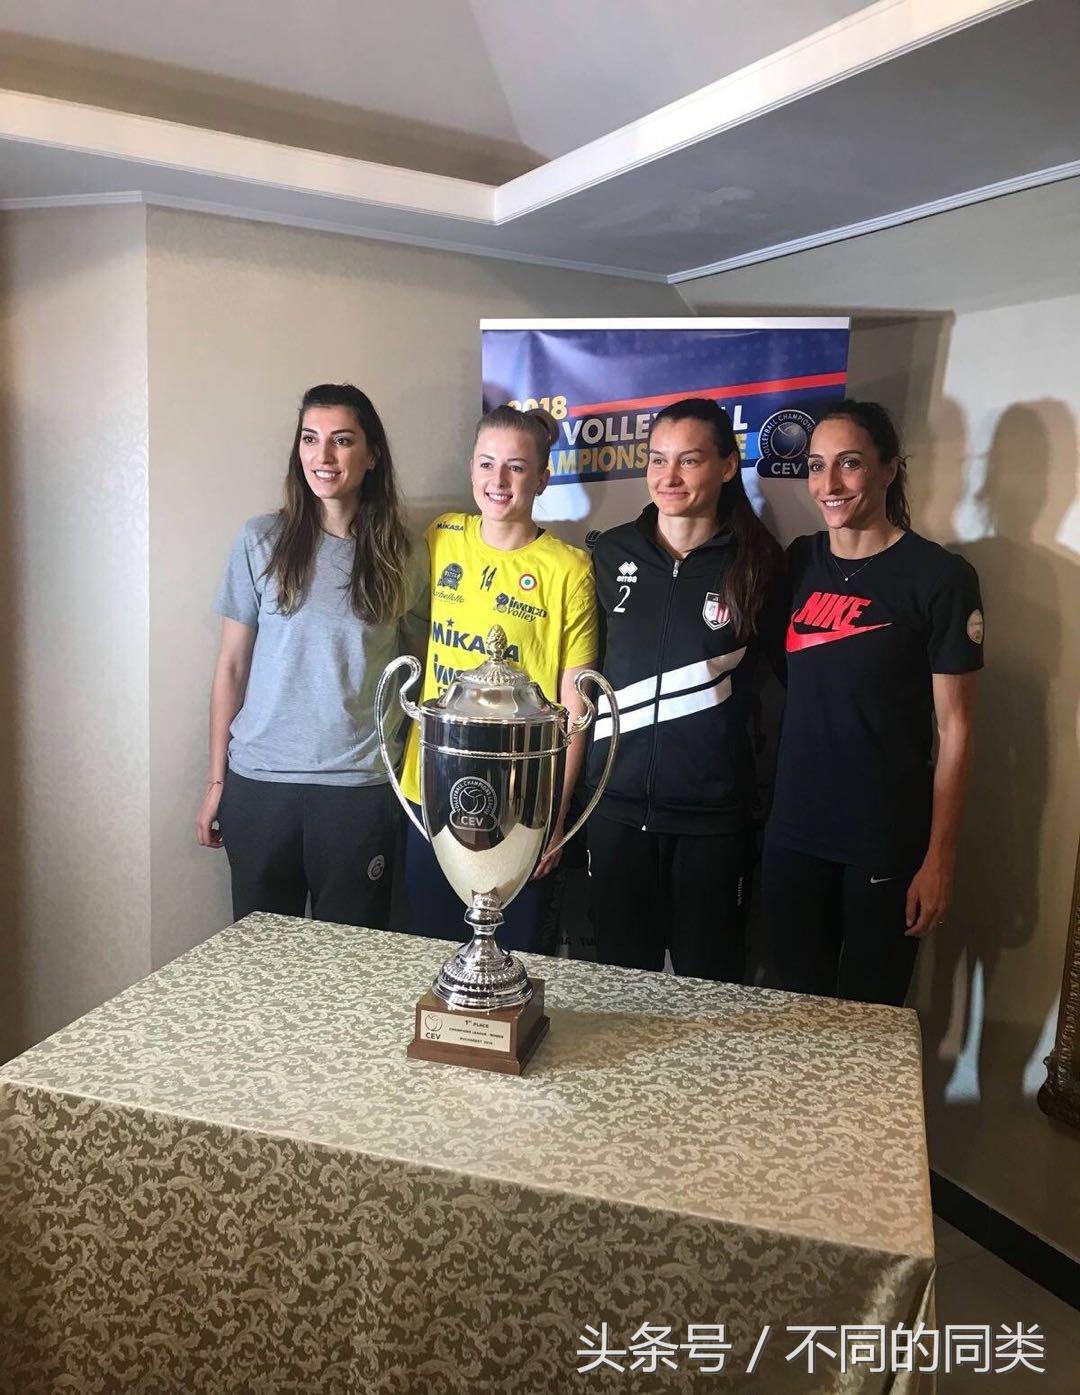 2017 2018女排欧冠联赛 2018女排欧冠(1)